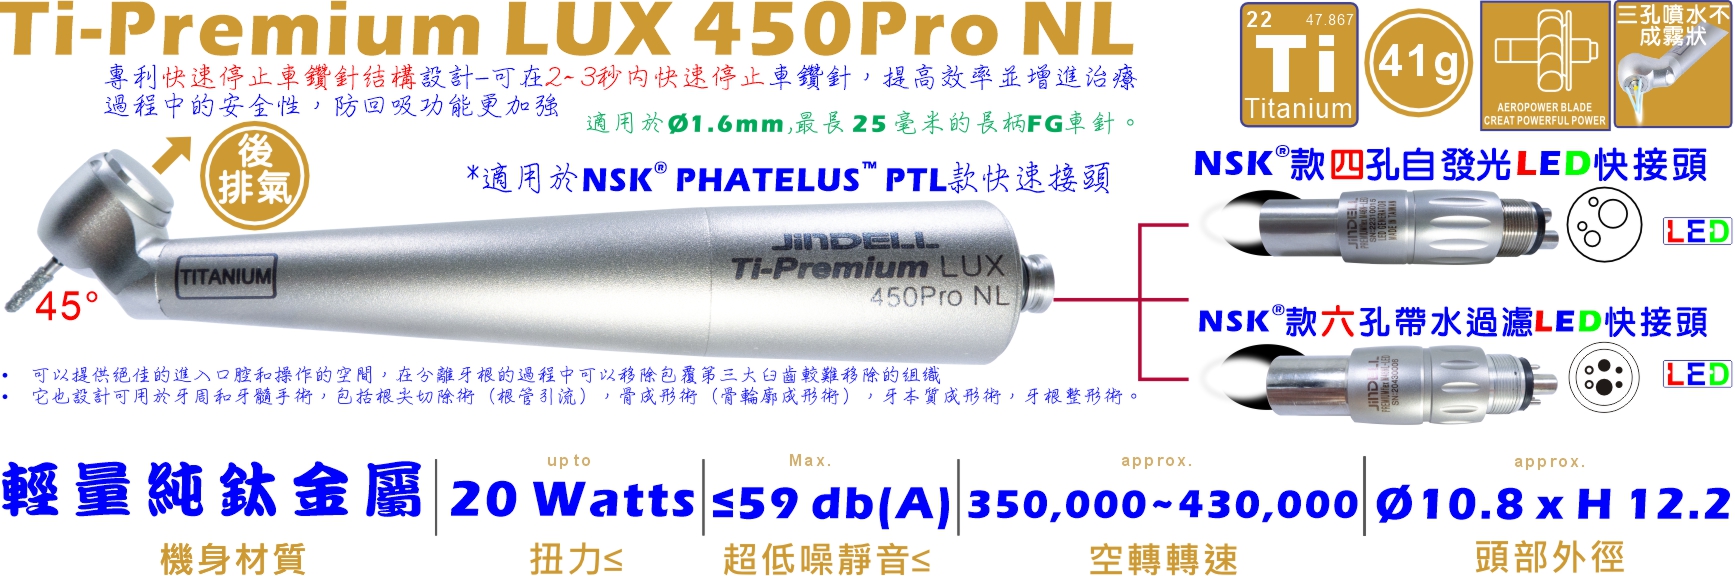 Ti-Premium LUX 450Pro NL-詳情